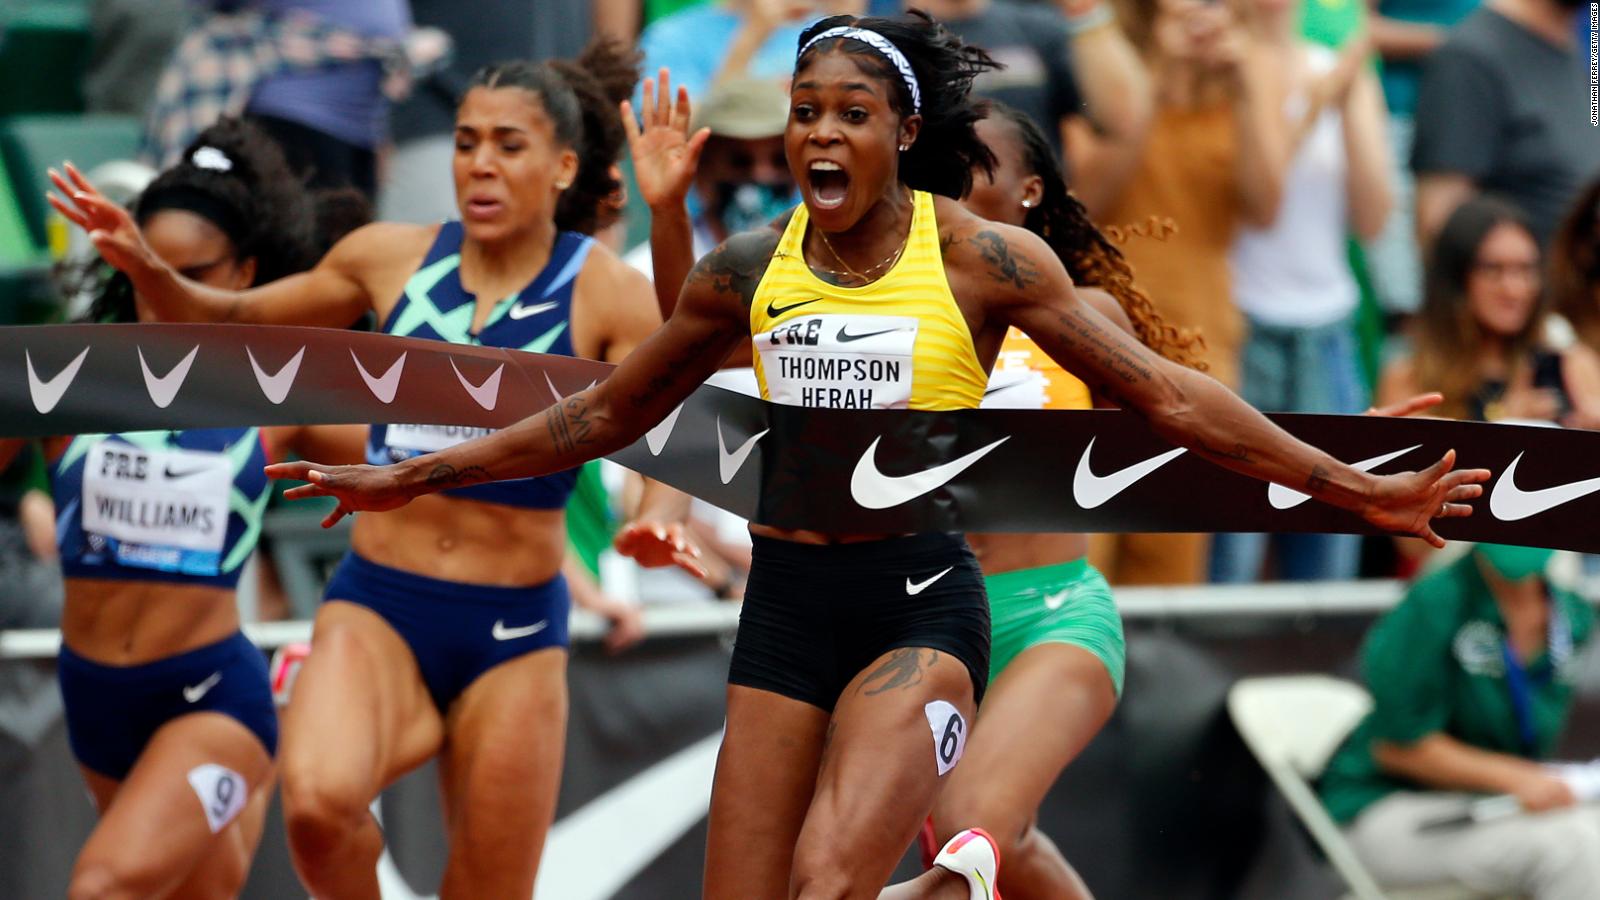 La campeona olímpica corre el segundo 100 m femenino más rápido de